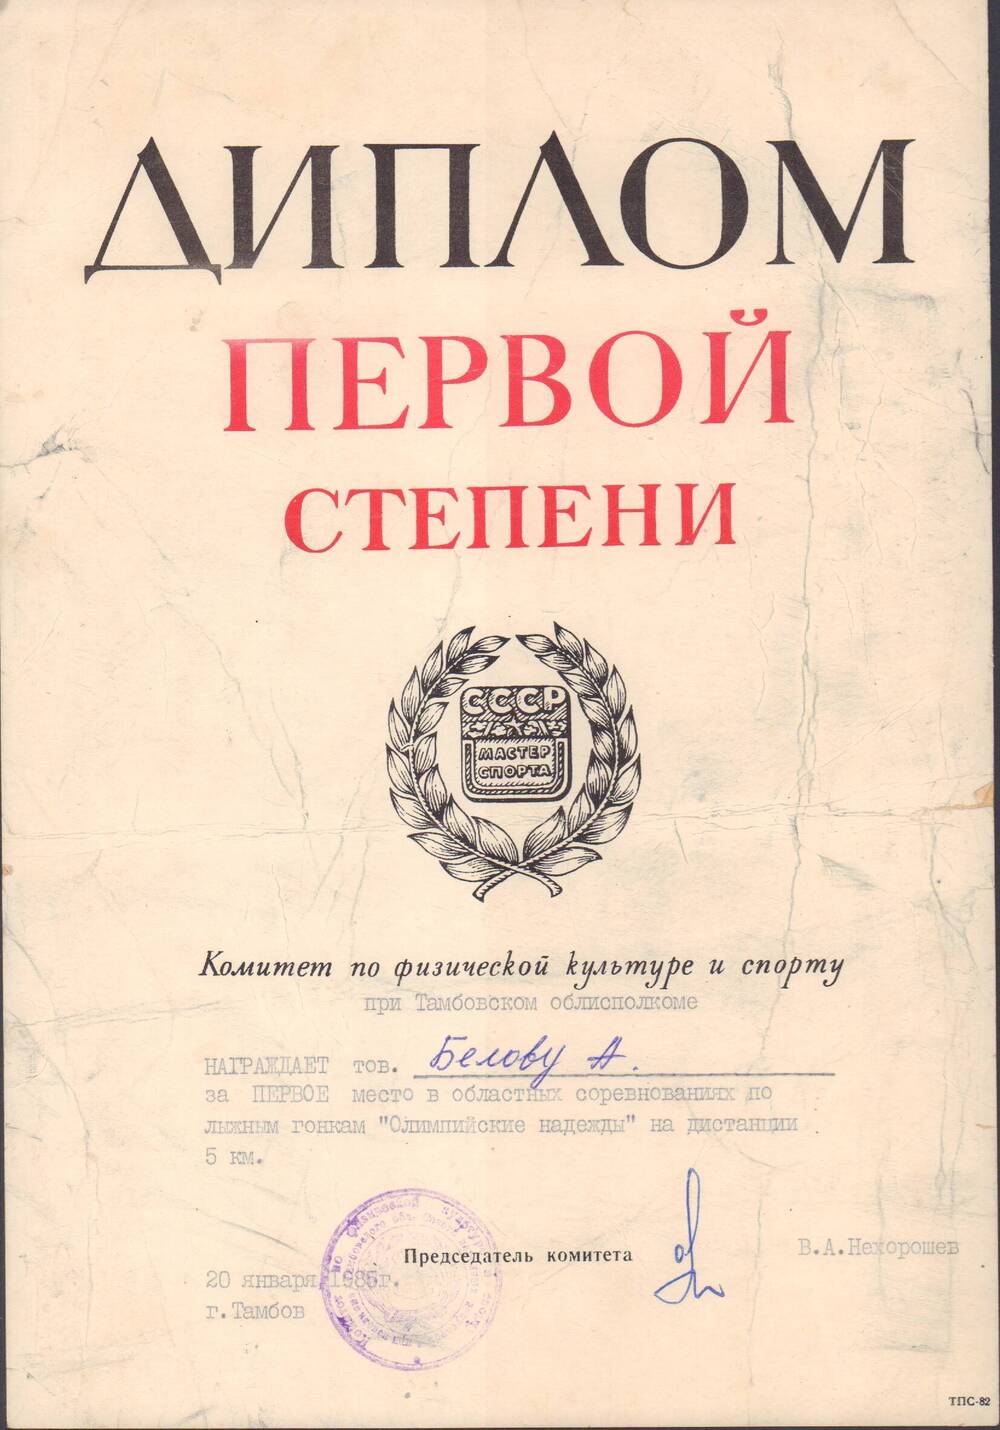 Диплом первой степени Белова А., Комитет по физической культуре и спорту при Тамбовском облисполкоме, г.Тамбов, 20 января 1985 г.